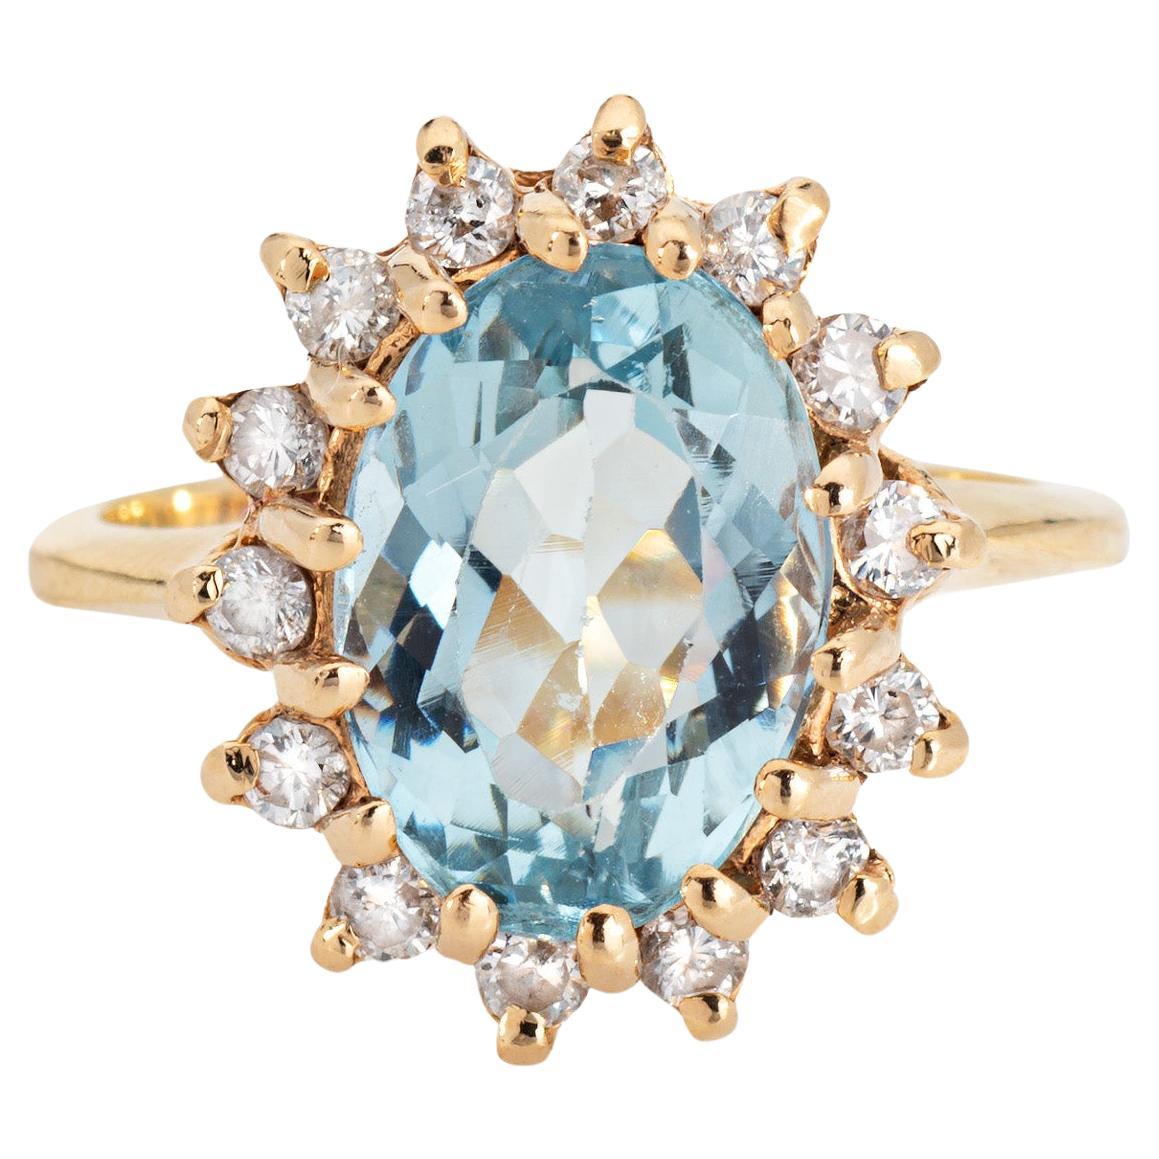 4.50ct Aquamarine Diamond Ring Vintage Sz 5.25 Princess Small Cocktail Jewelry